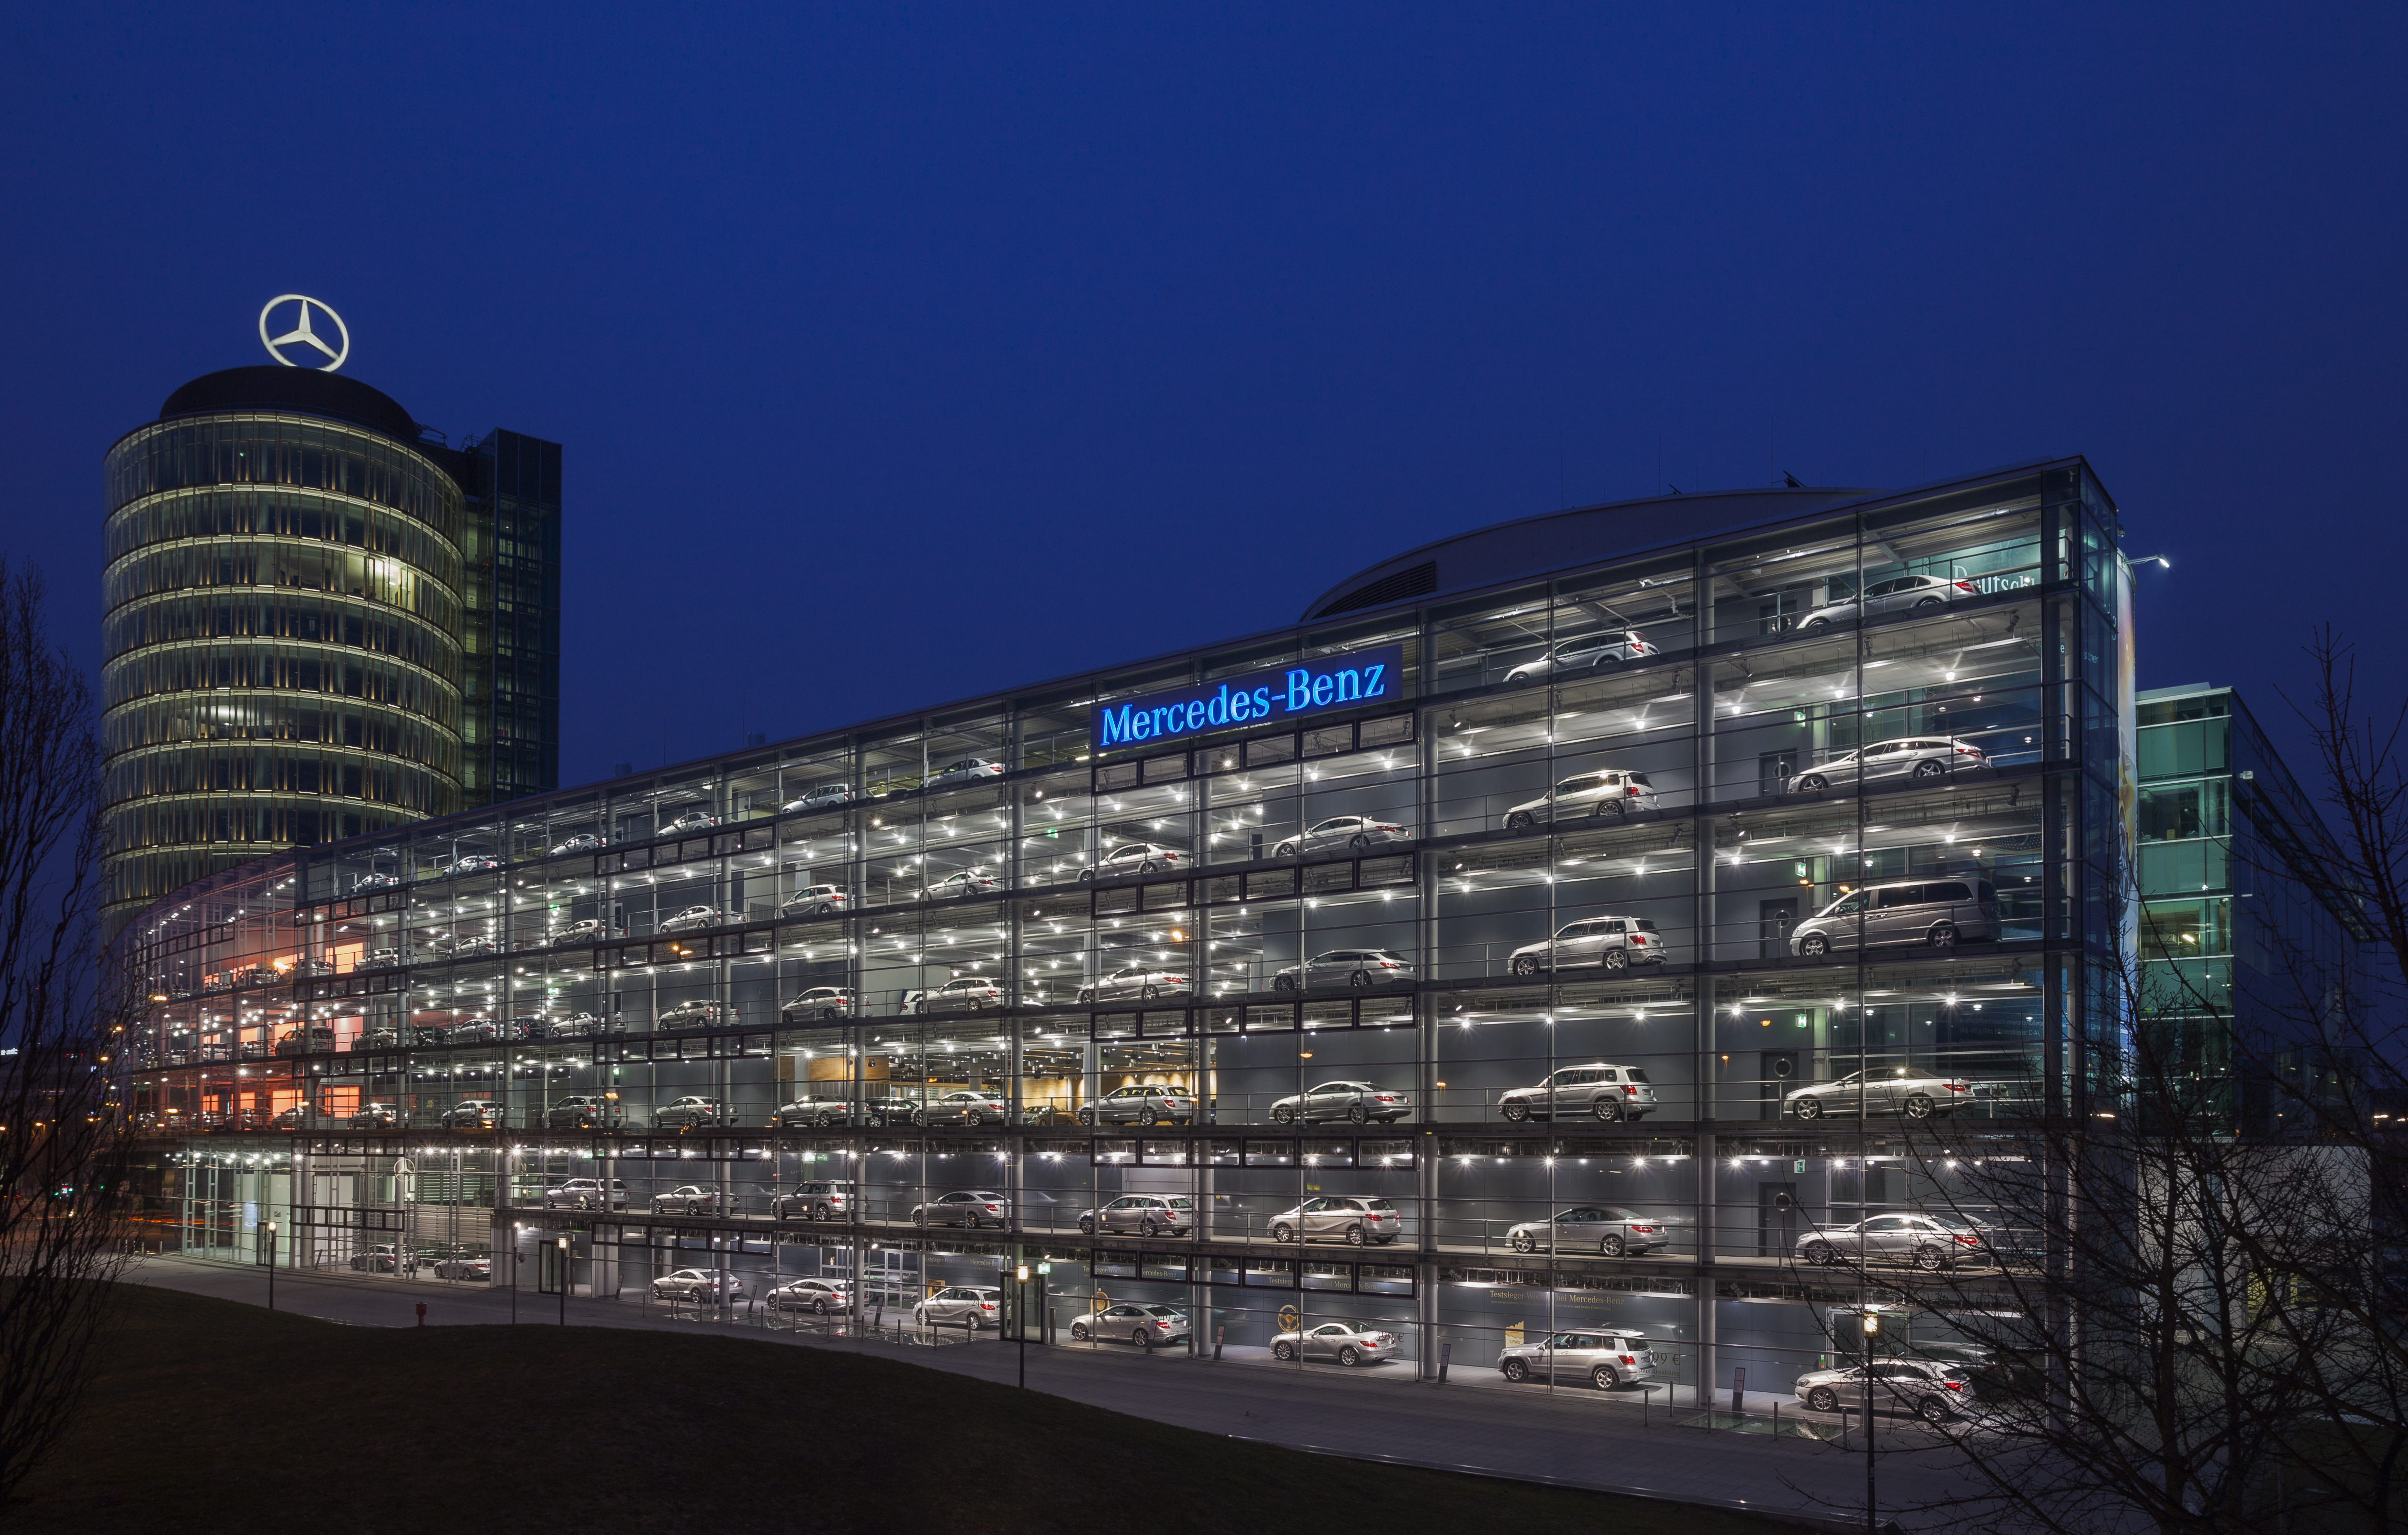 Concesionario de Mercedes-Benz, Múnich, Alemania, 2013-03-30, DD 21